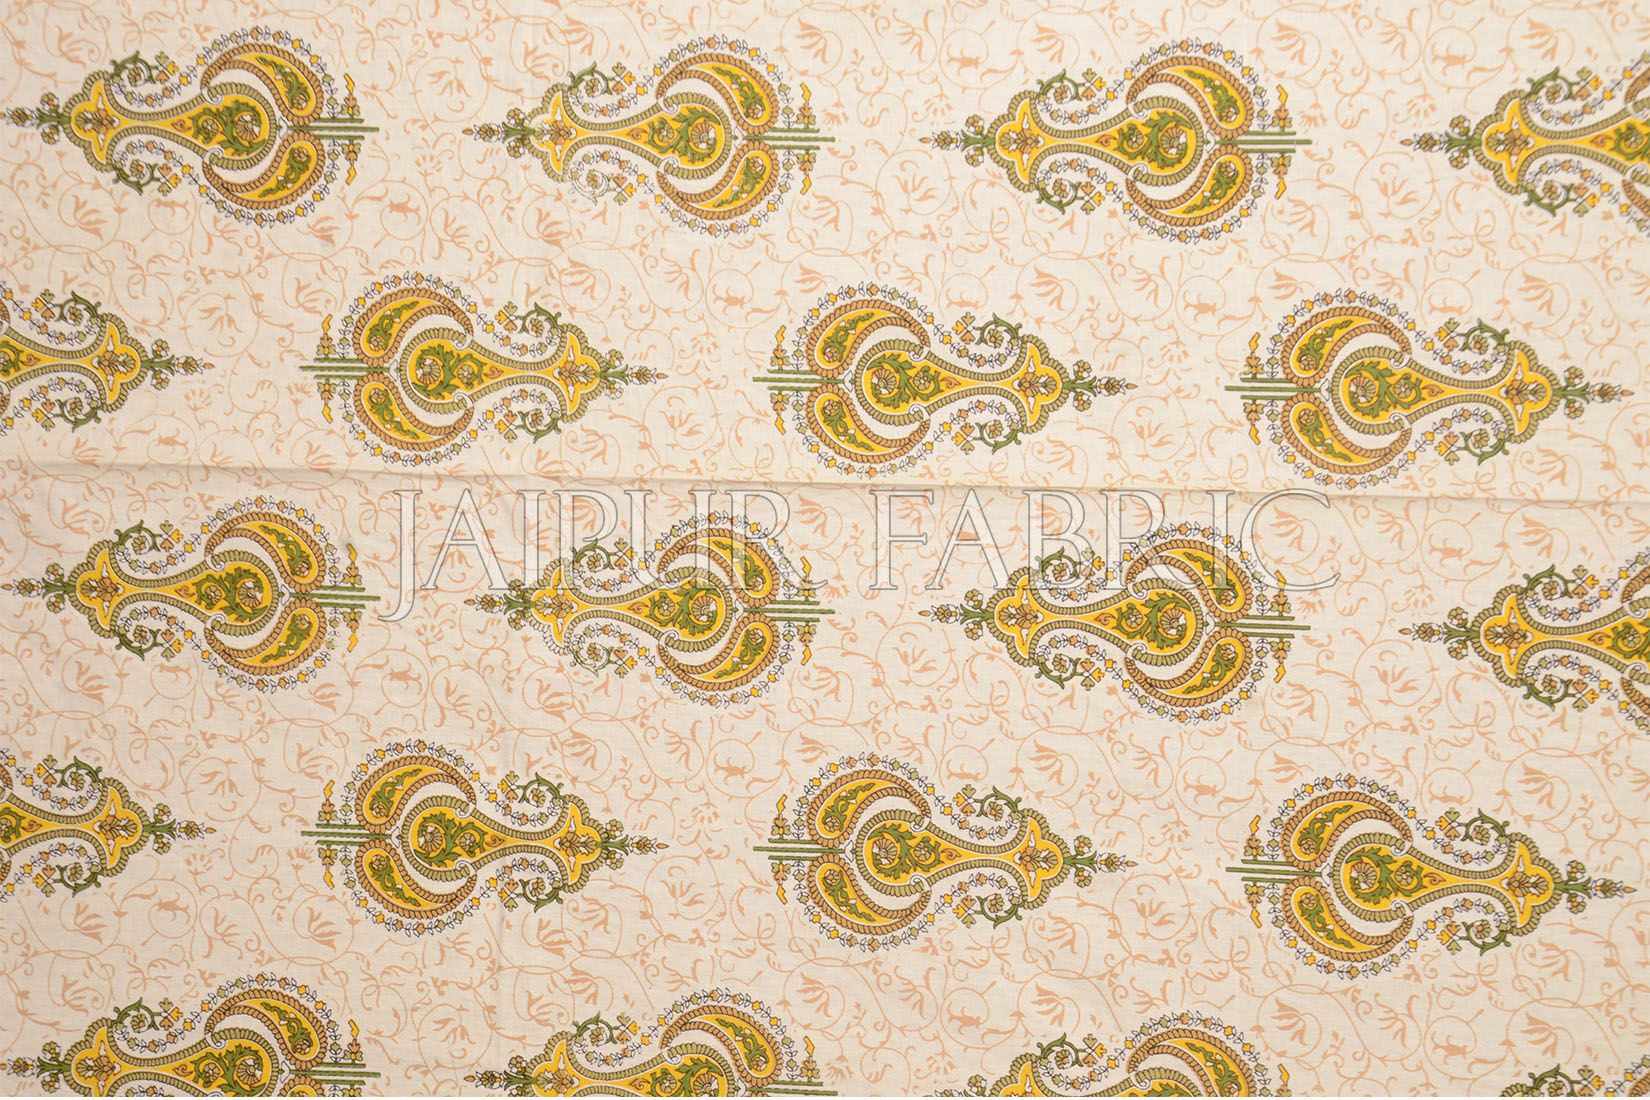 Yellow Jaipuri Keri Printed Cotton Single Bed Sheet